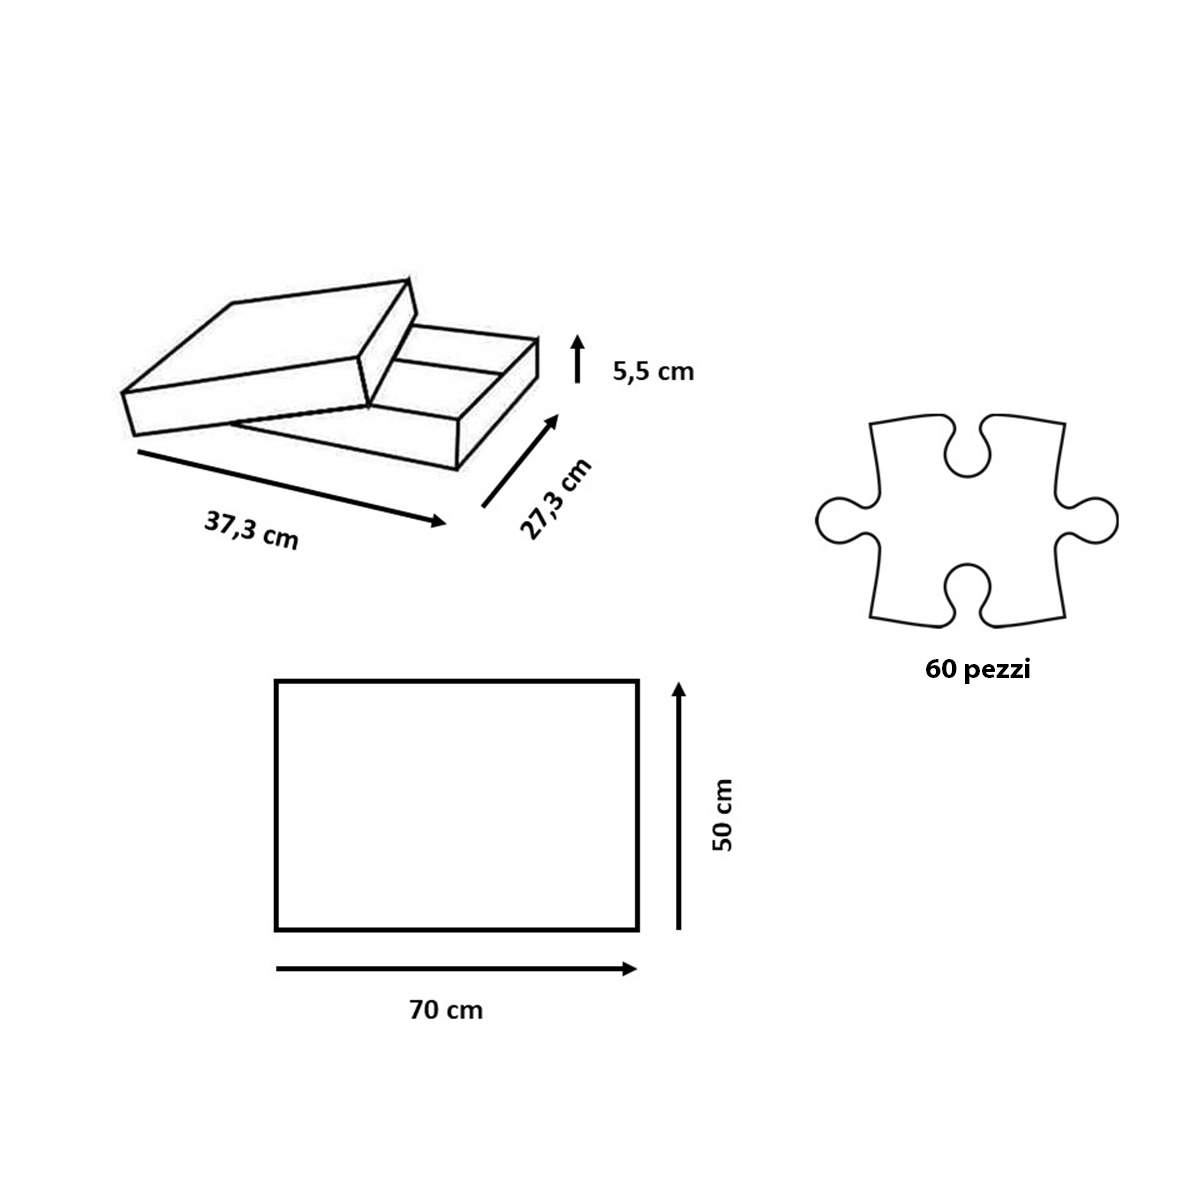 Ravensburger - puzzle 60 pezzi - formato giant – pinocchio – per bambini a partire dai 4 anni - 03125 - RAVENSBURGER